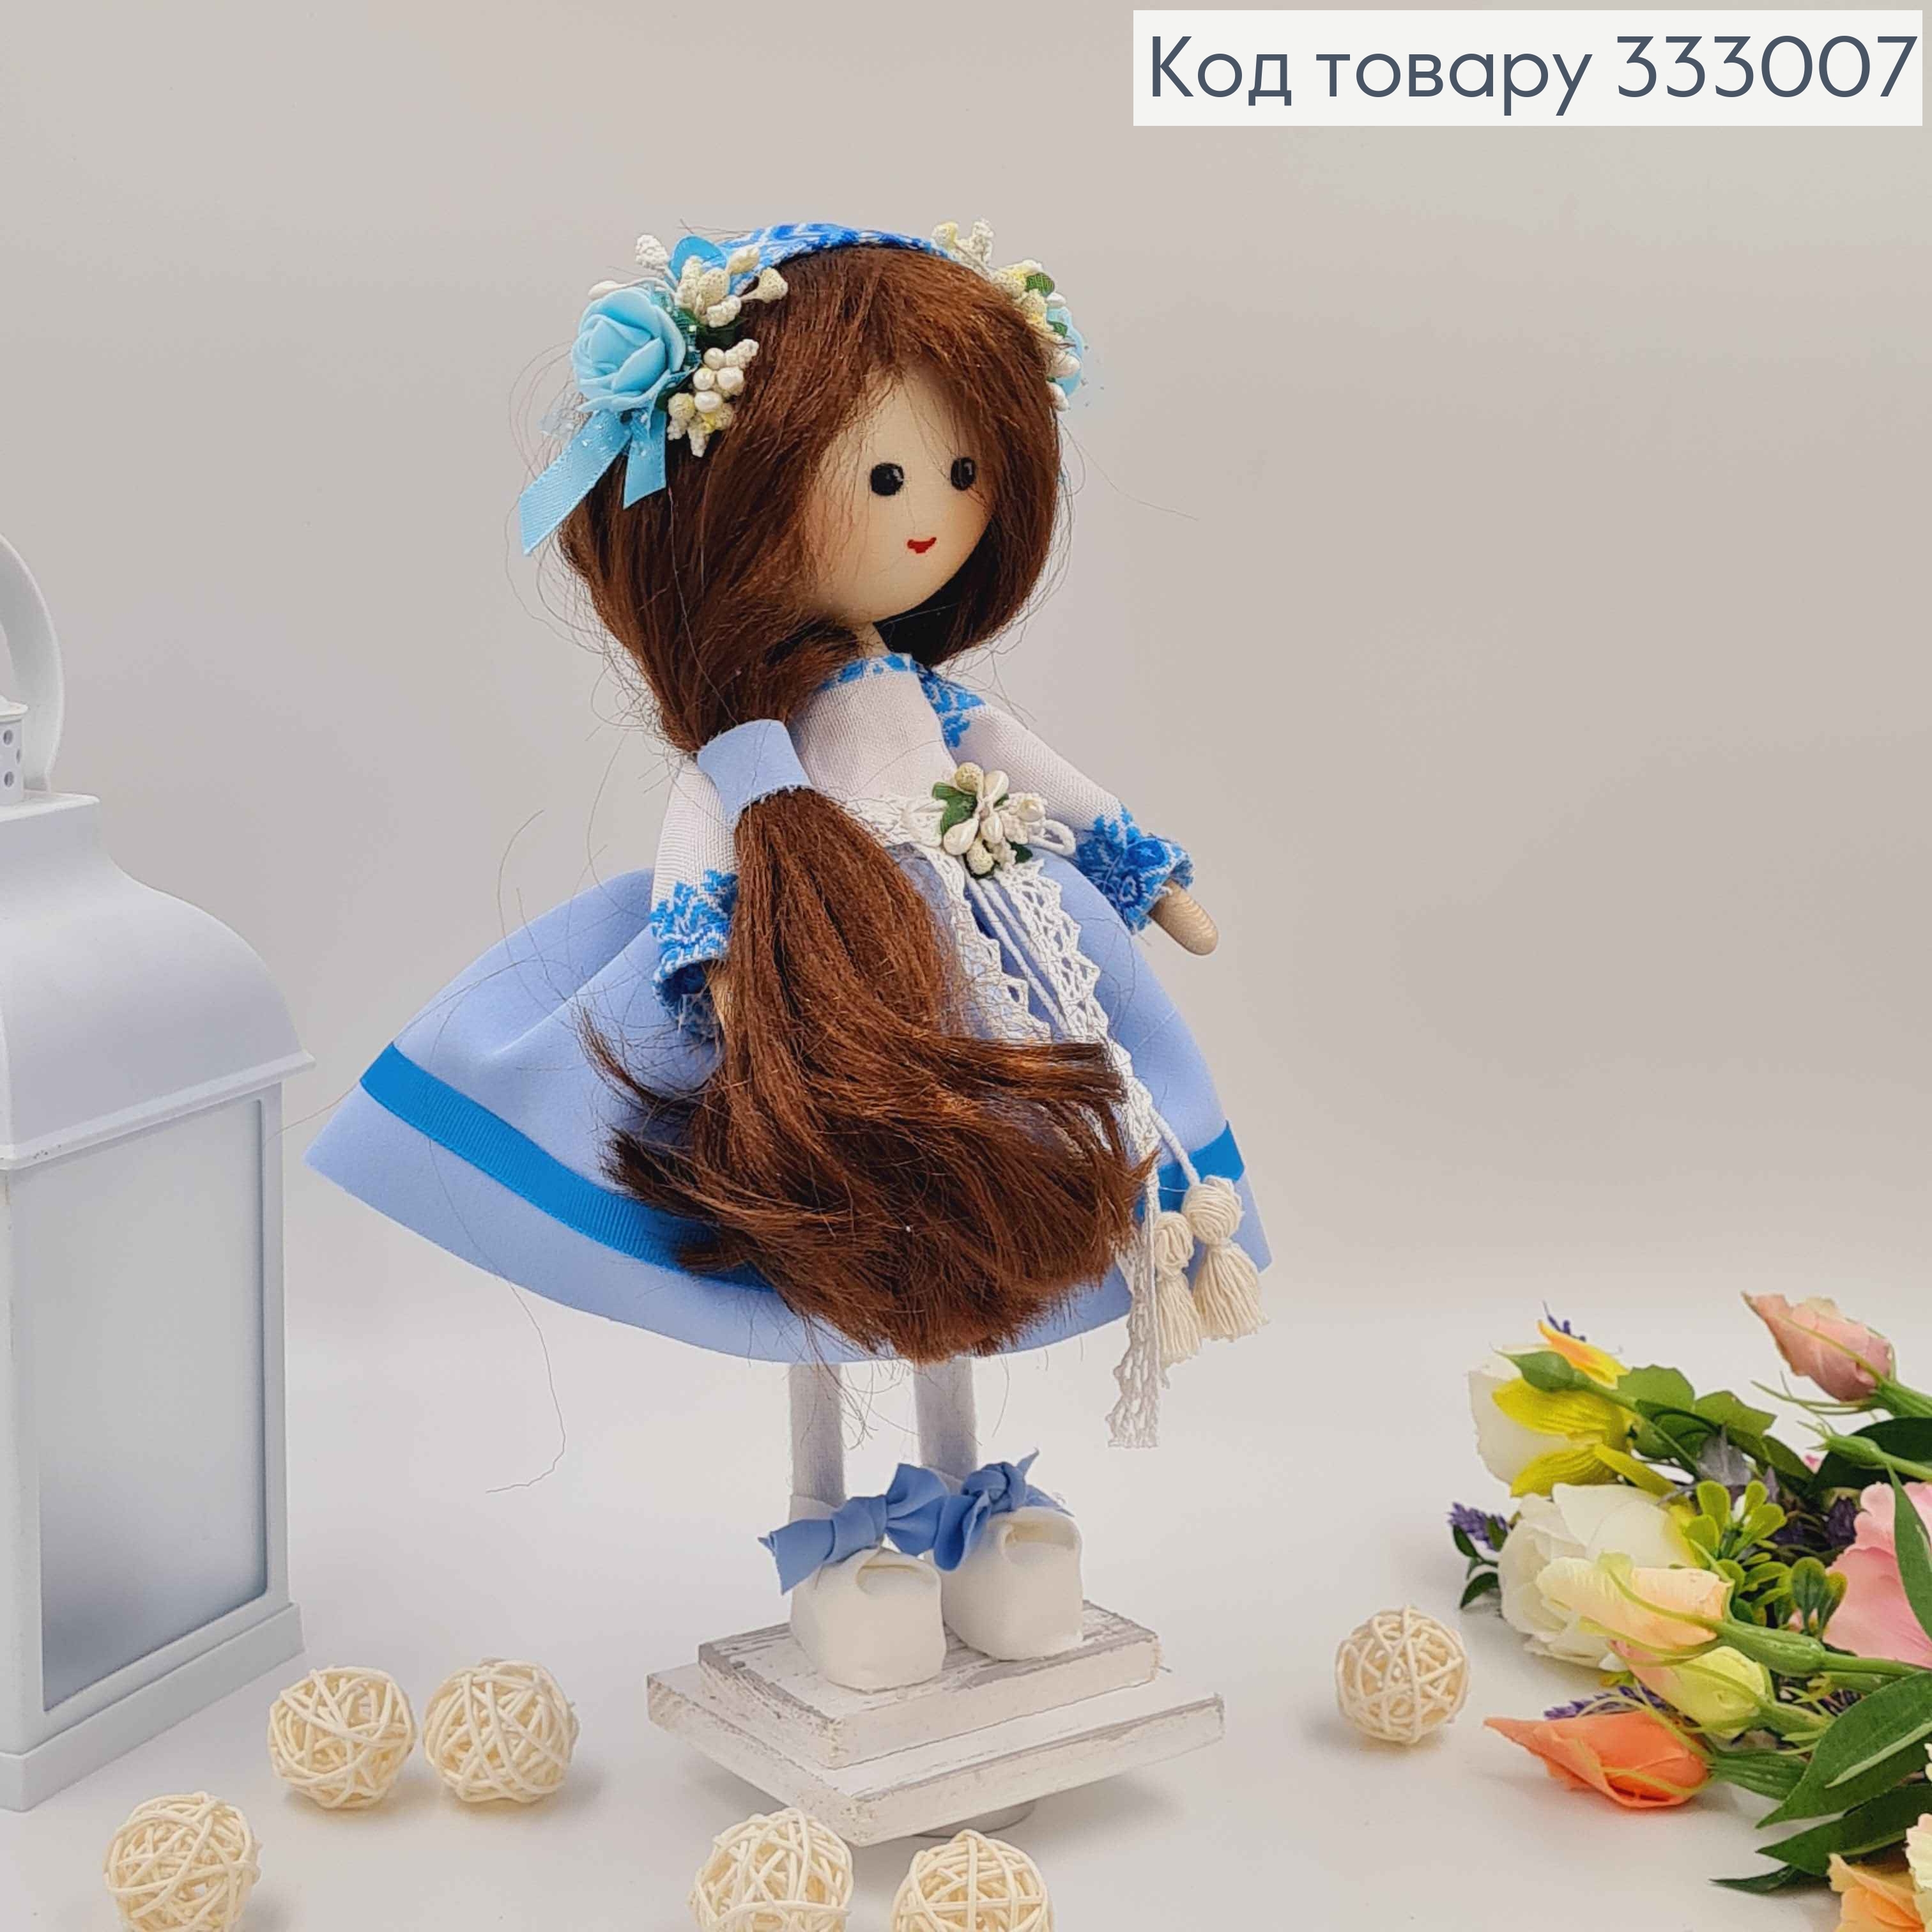 Лялька ДІВЧИНКА,"З русявим волоссям" в блакитній сукні, висота 32см, ручна робота, Україна 333007 фото 2